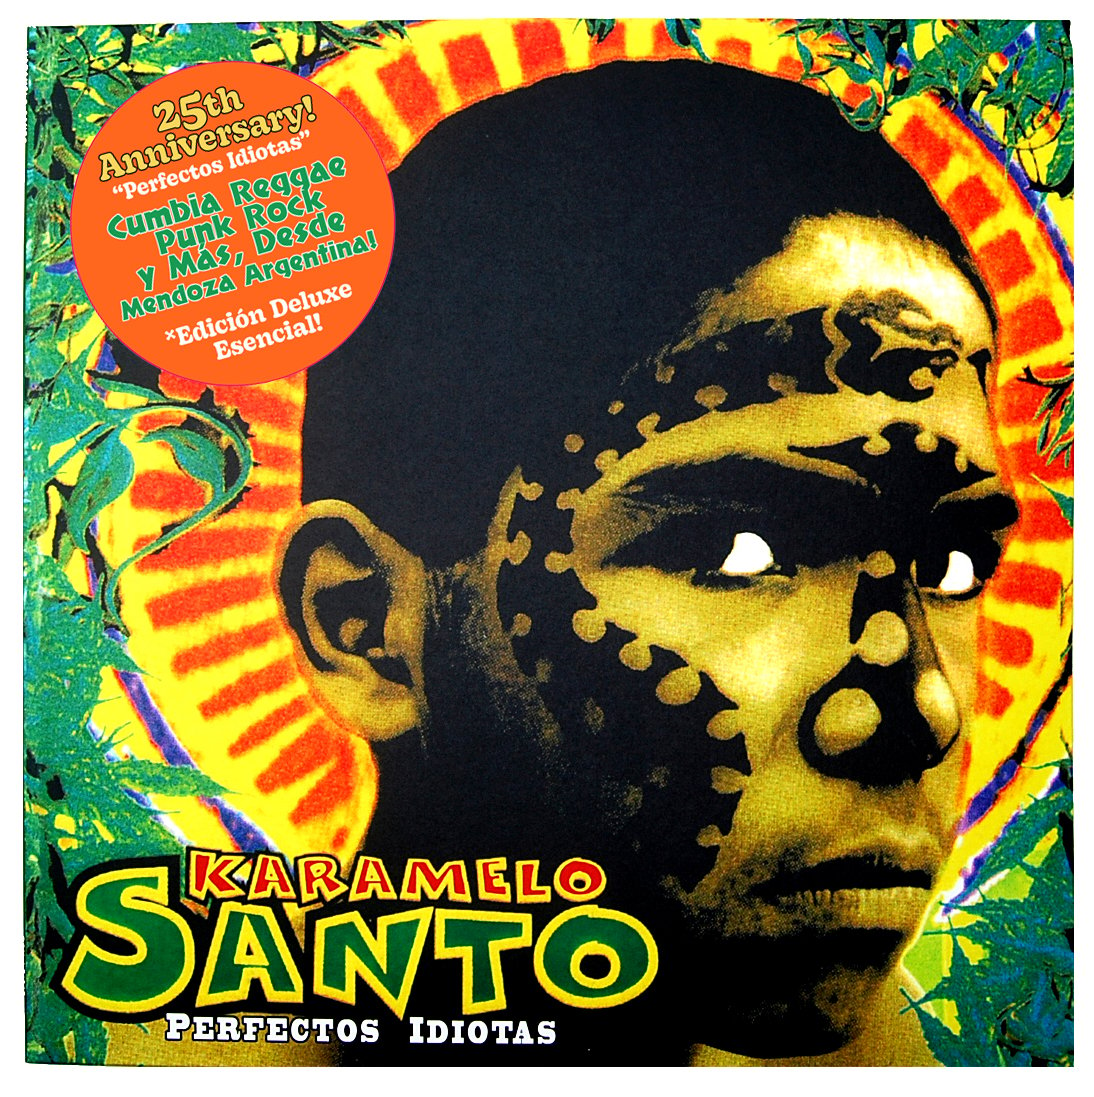 Image of Karamelo Santo - (LP) - "Perfectos Idiotas" - 25 Aniversario w/ Download Card - Versión Esencial! 